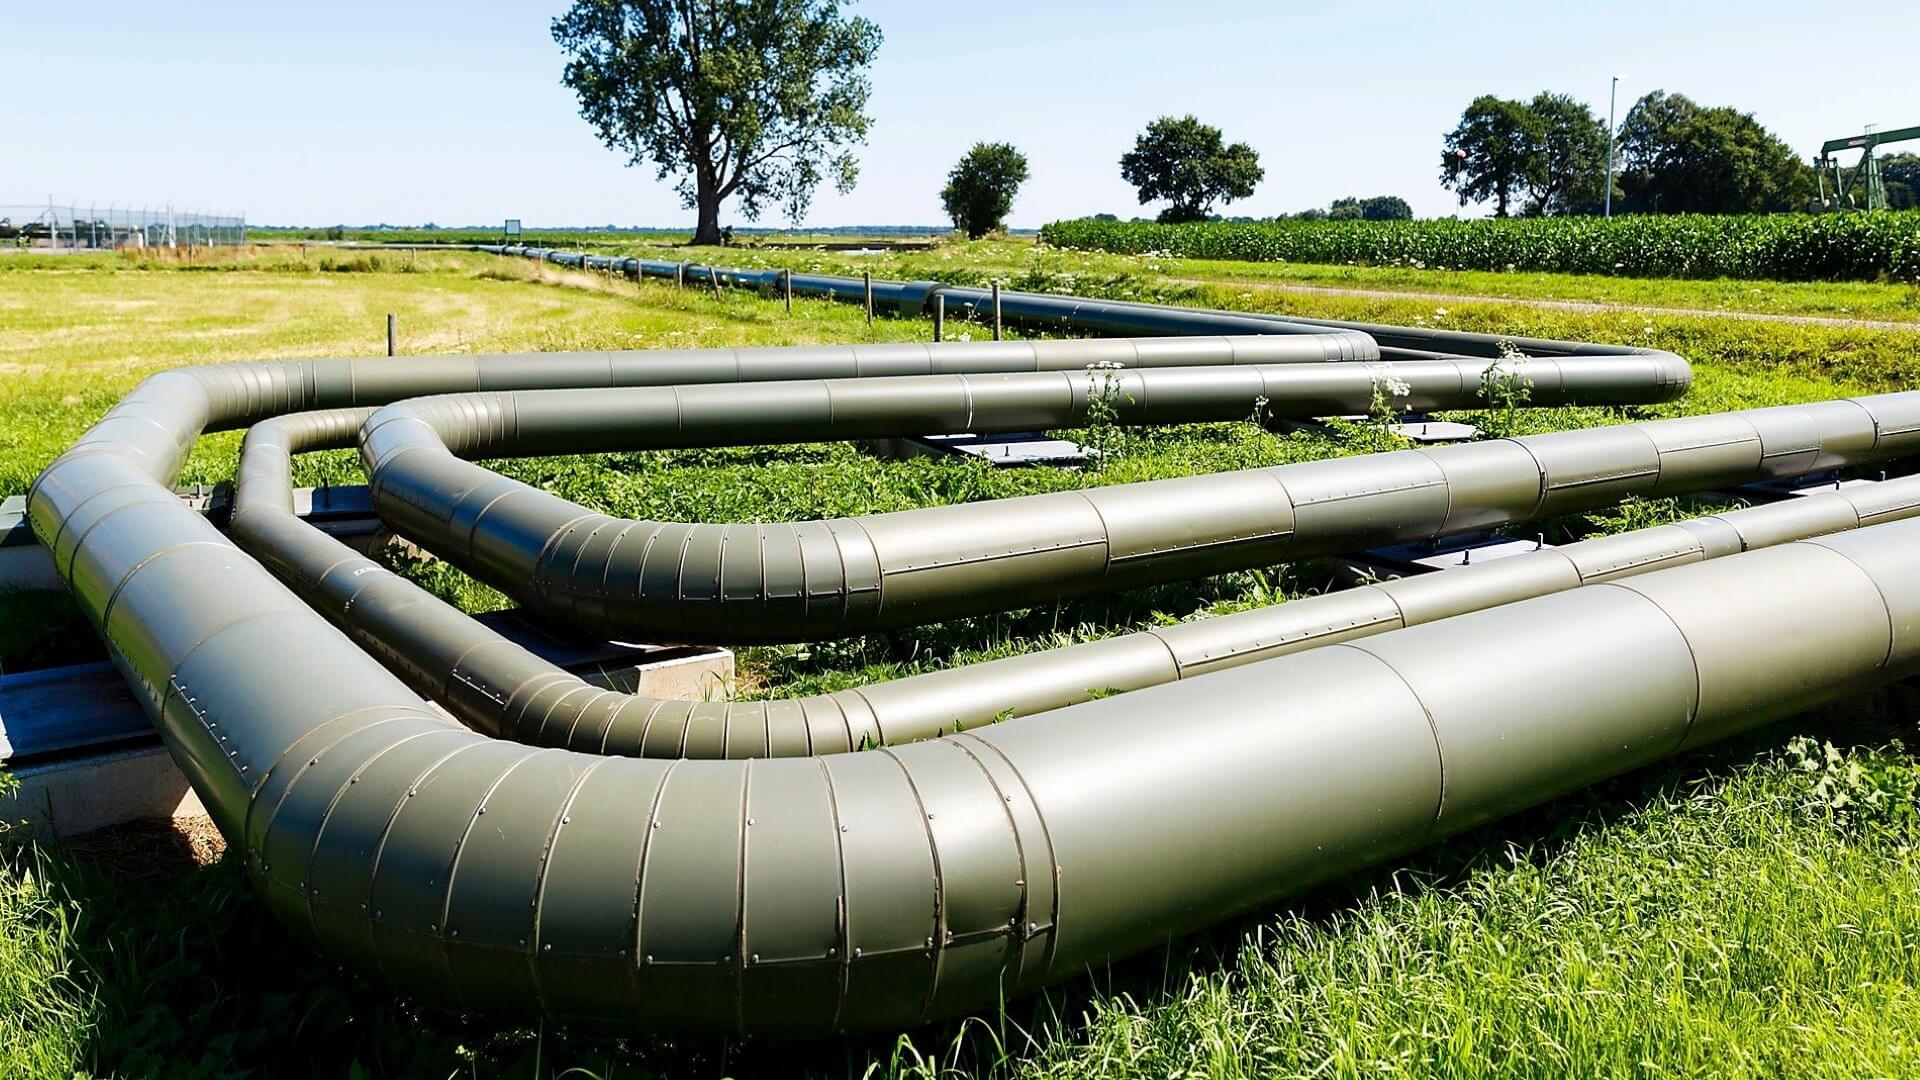 Loop of gas pipelines crossing grassy field